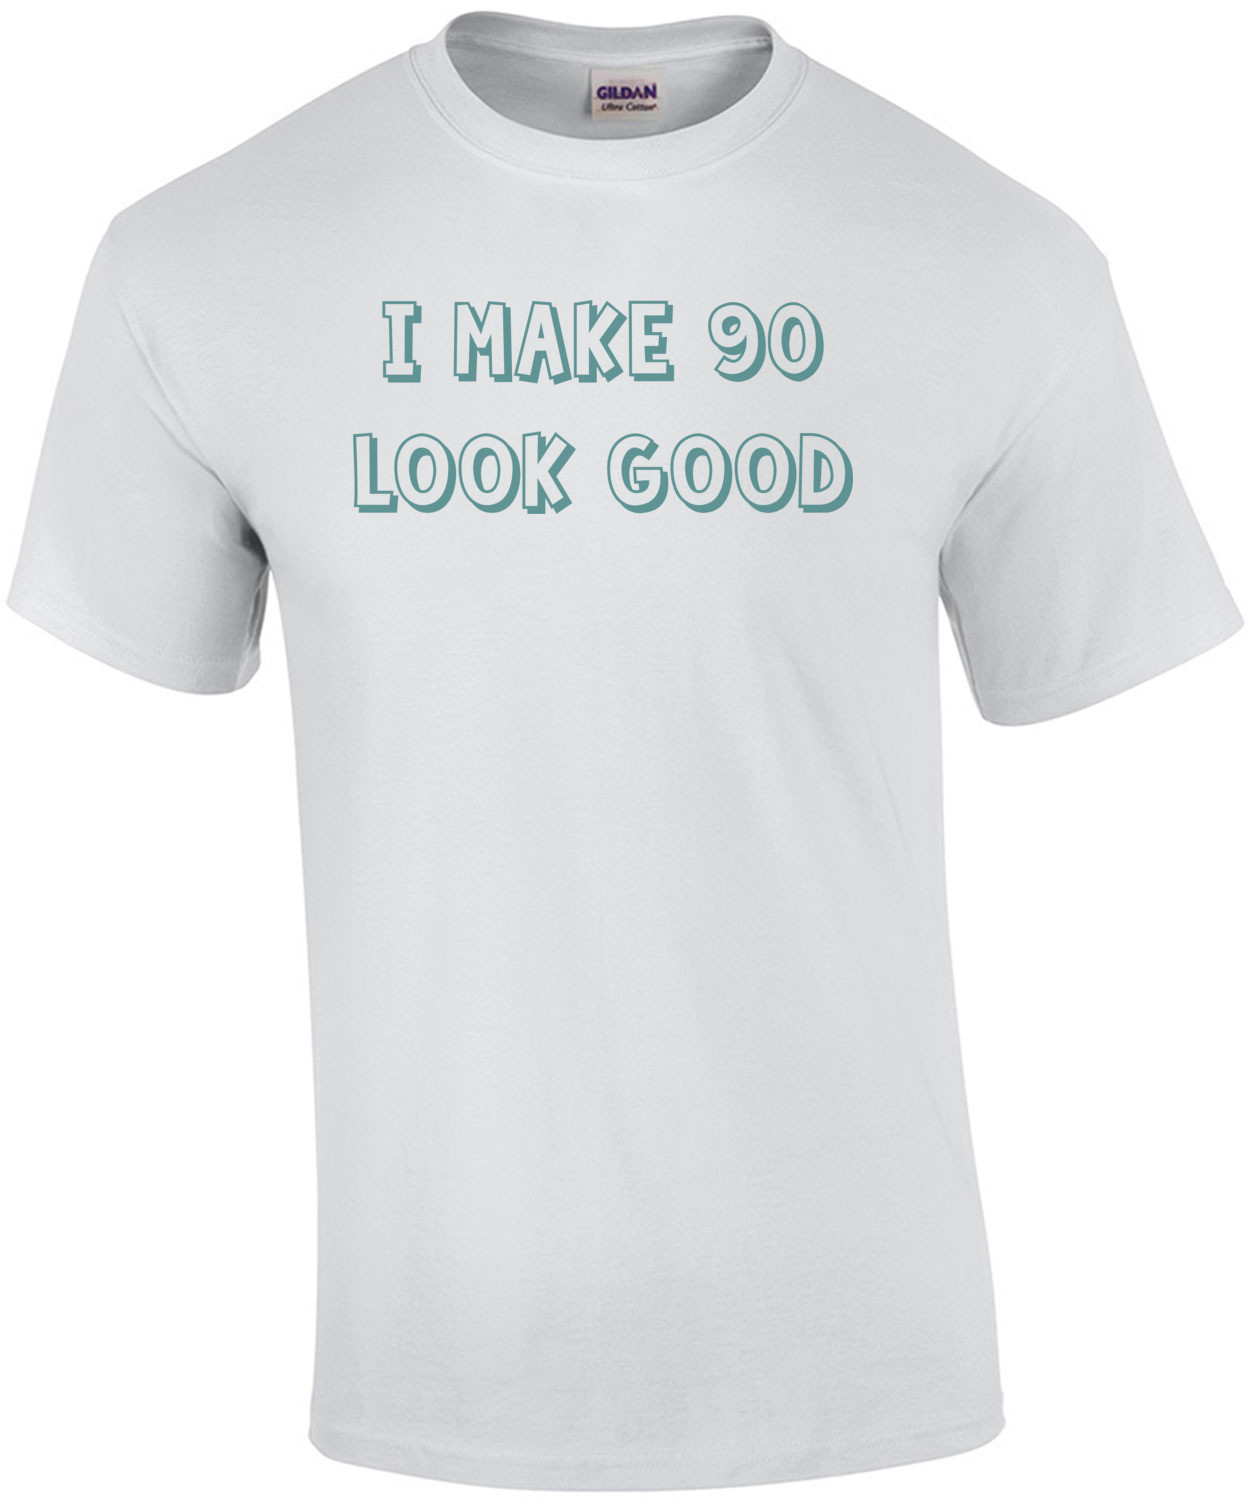 I make 90 look good - ninety 90 birthday t-shirt